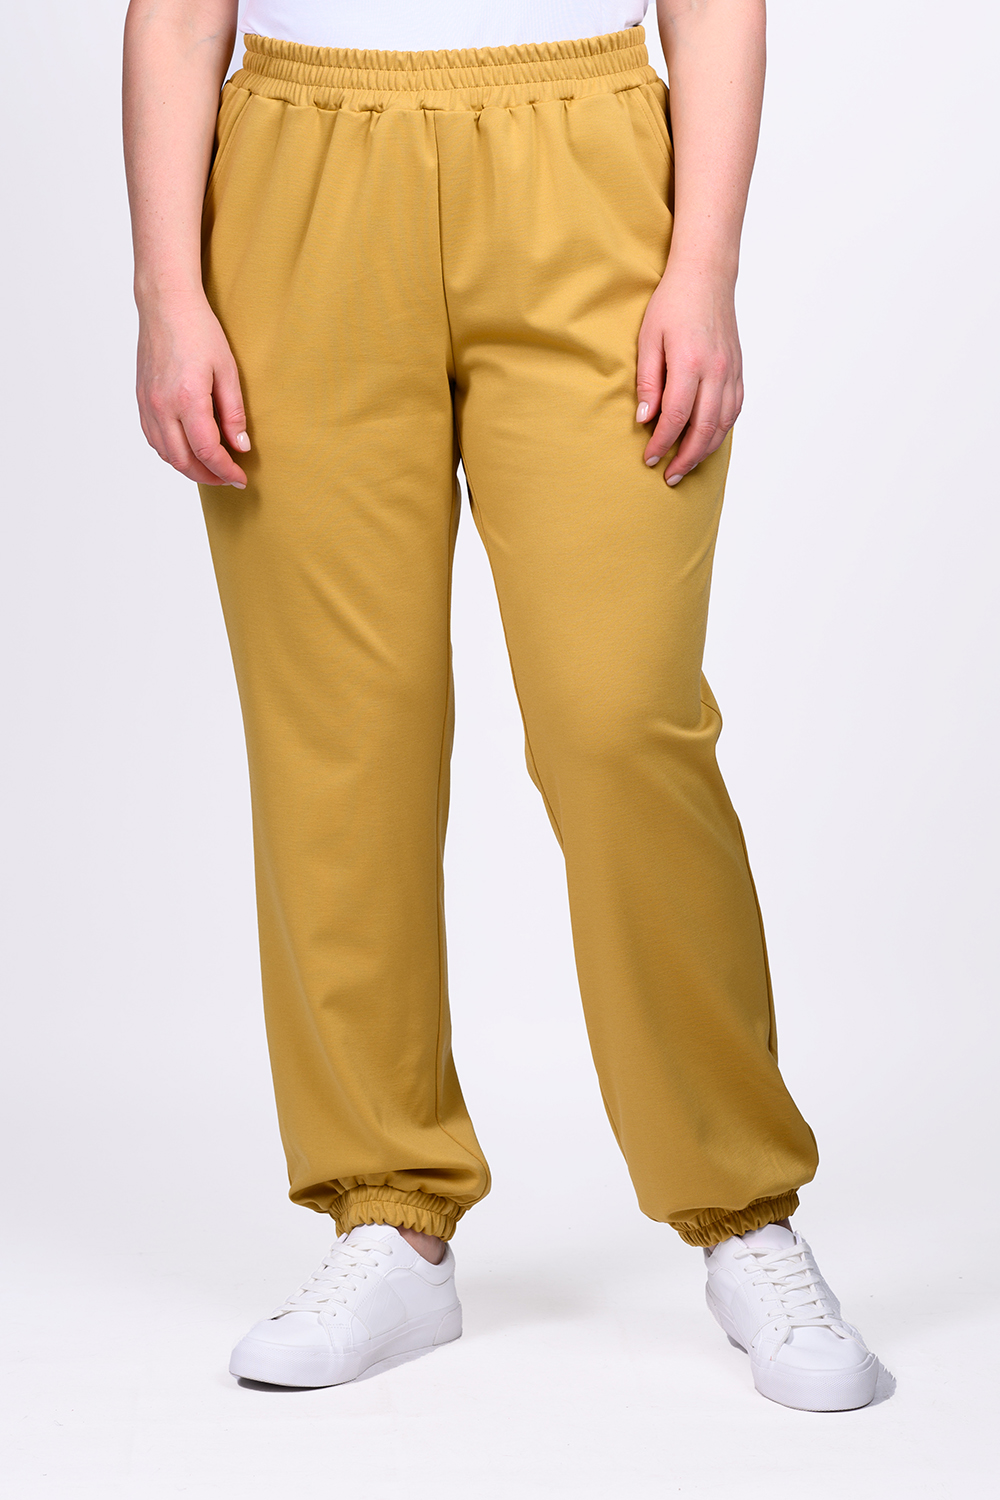 Спортивные брюки женские SVESTA P463 желтые 60 RU